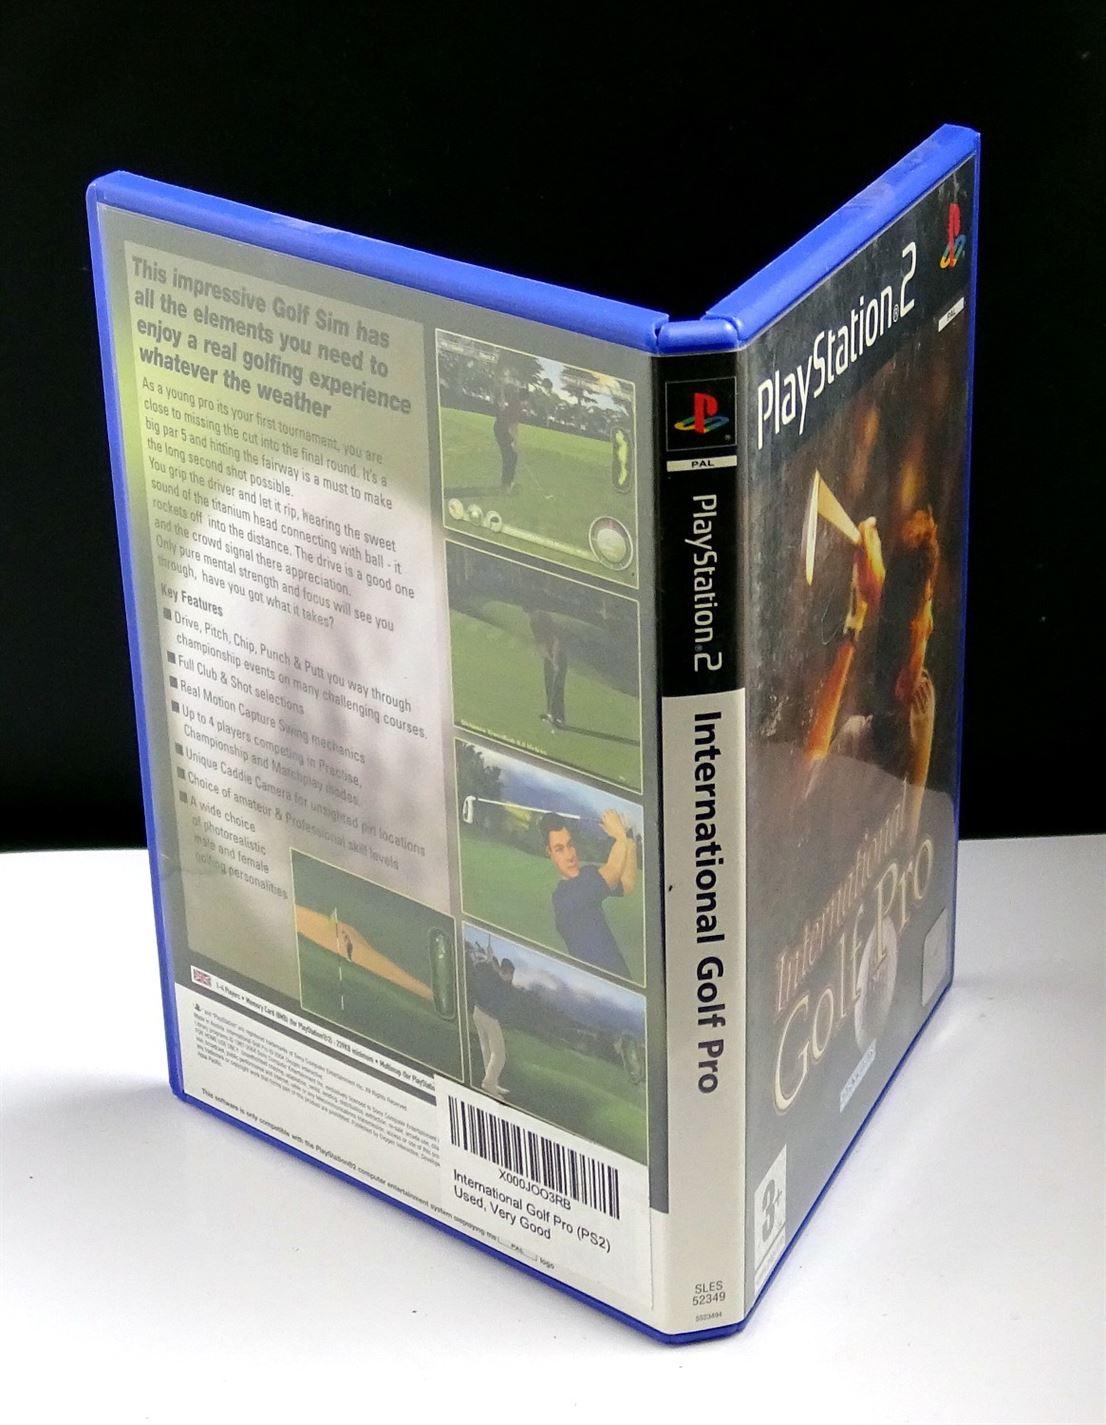 International Golf Pro PS2 (PlayStation 2) - UK Seller